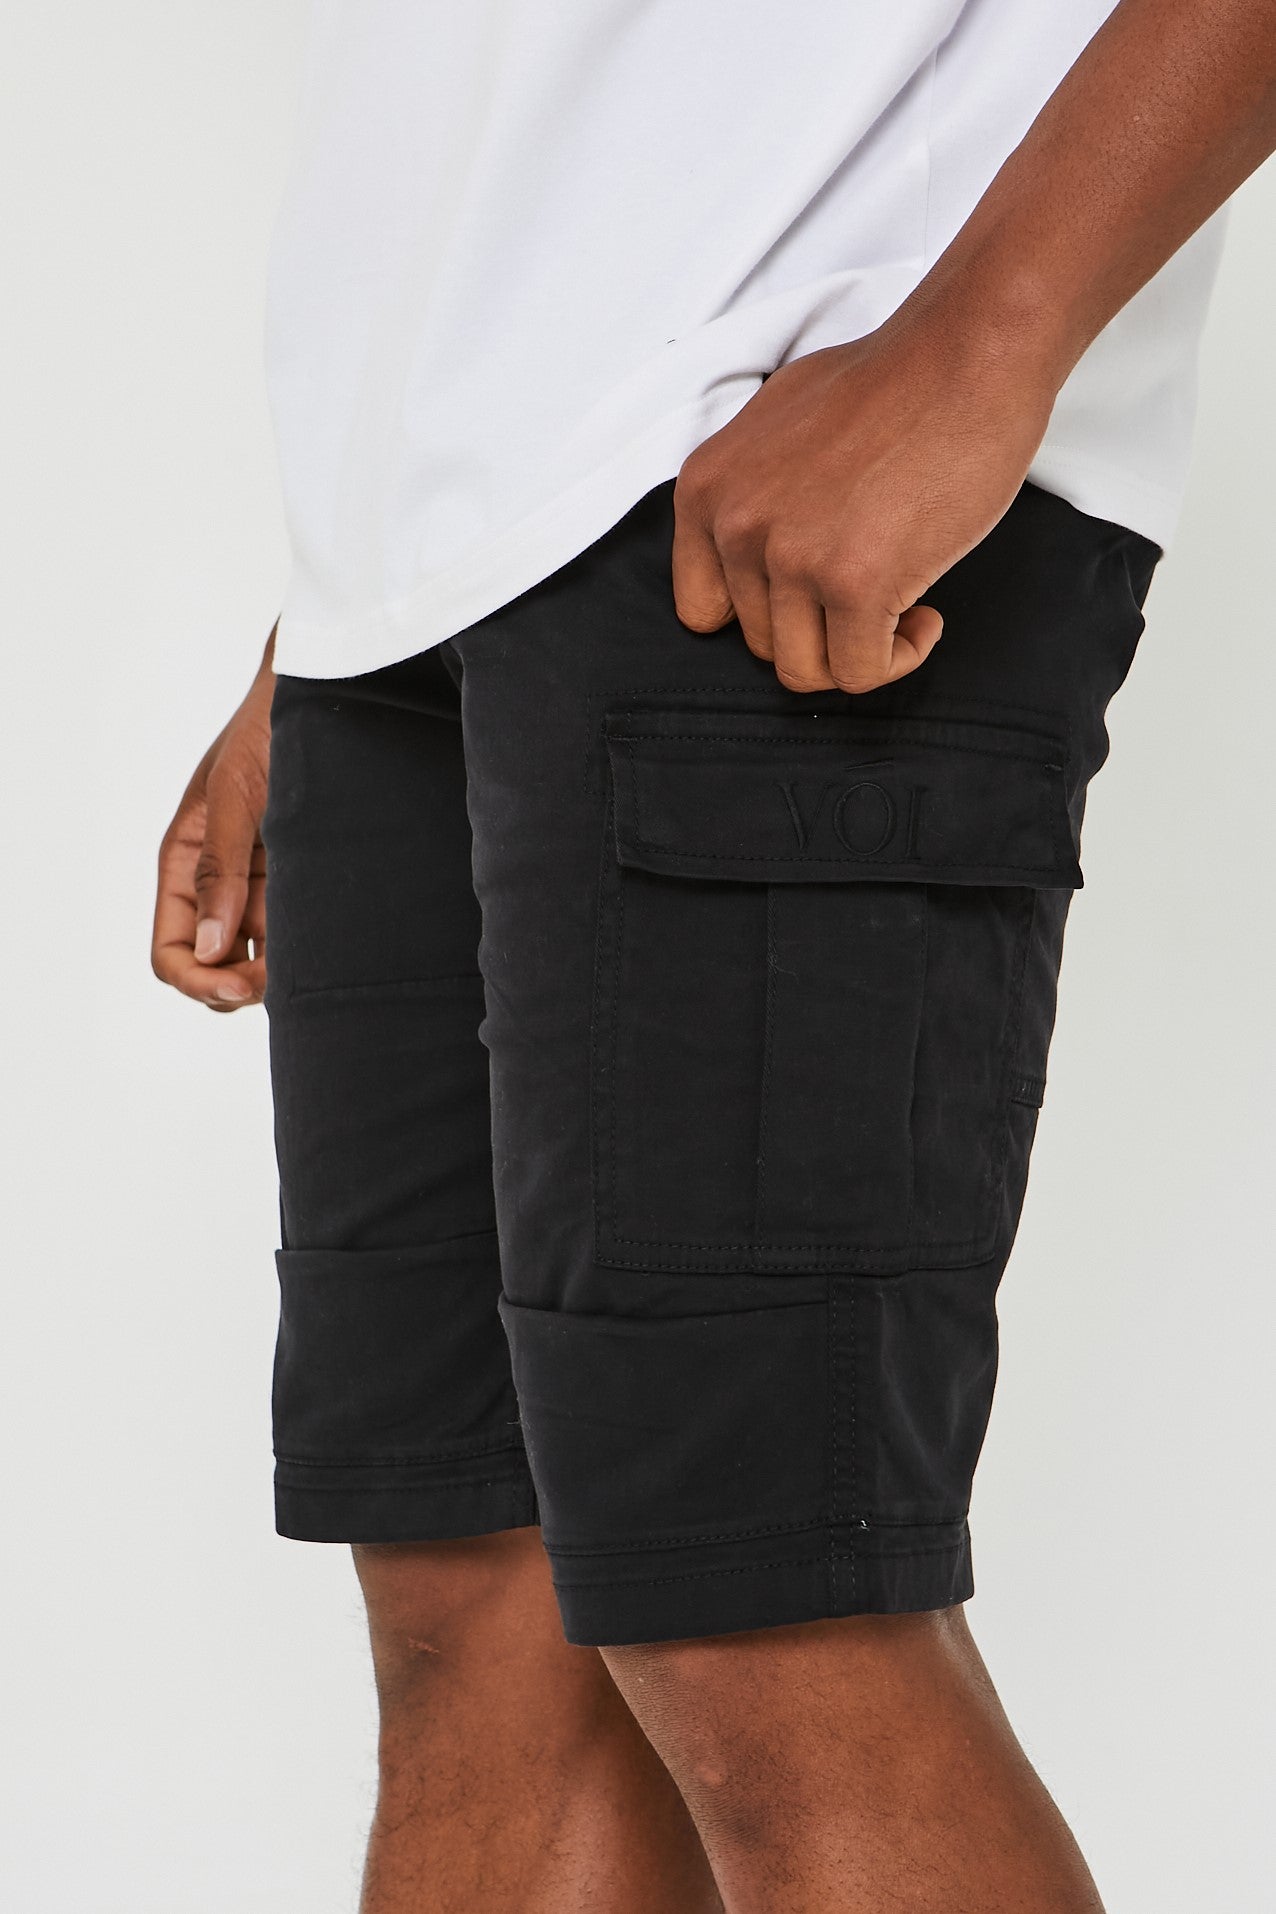 Langford Cargo Shorts - Black